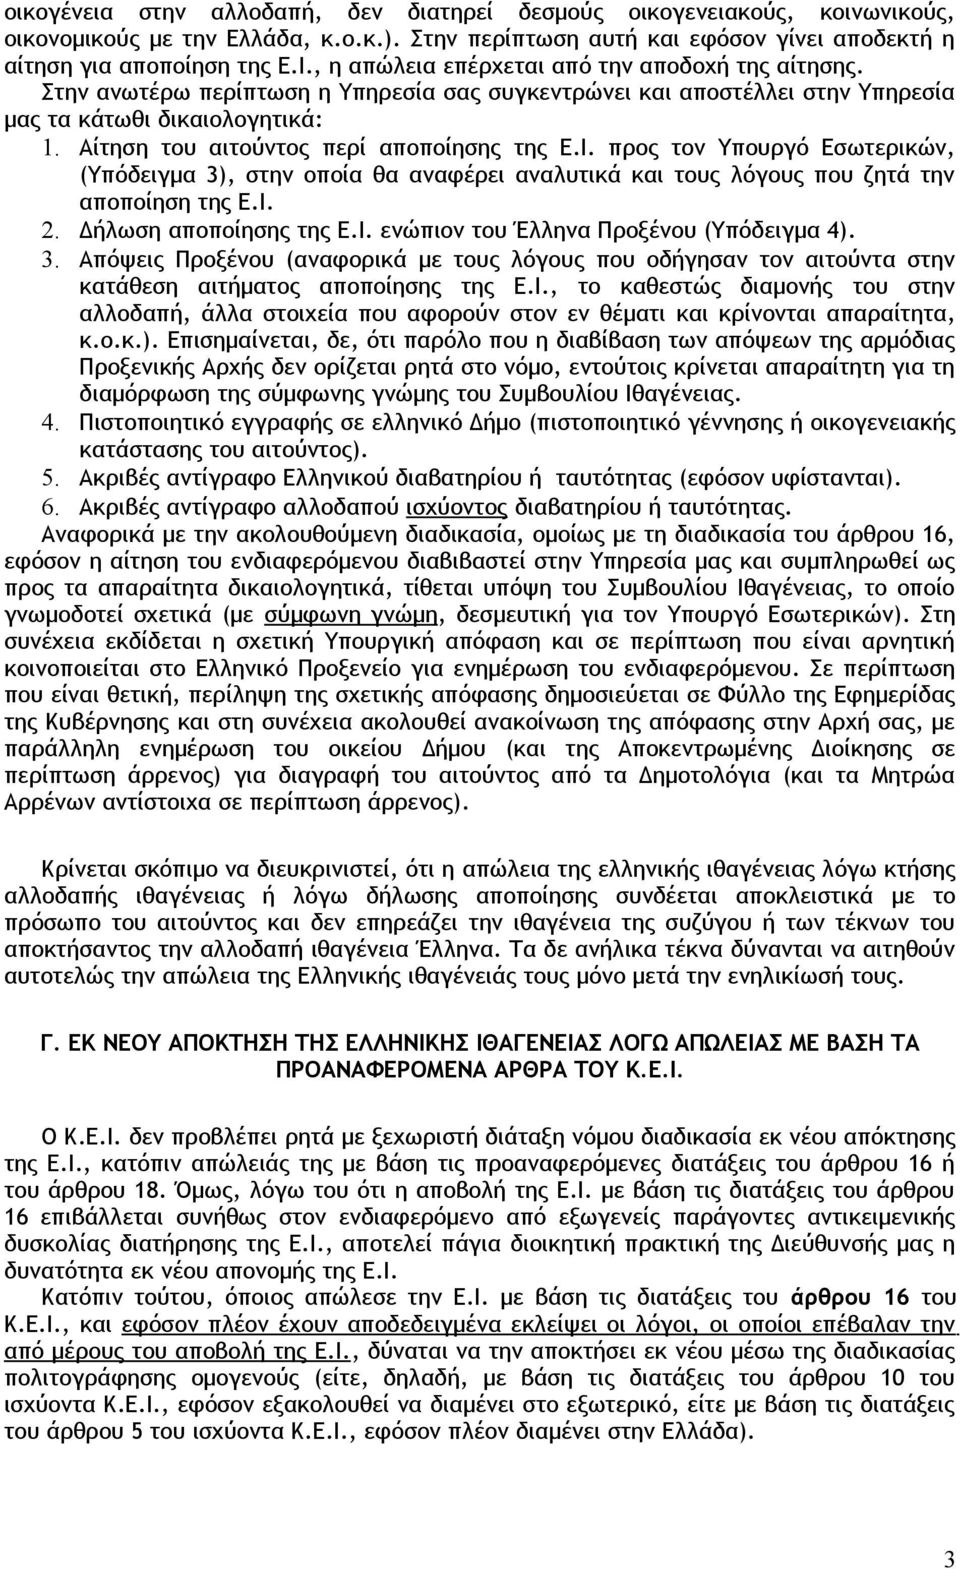 Αίτηση του αιτούντος περί αποποίησης της Ε.Ι. προς τον Υπουργό Εσωτερικών, (Υπόδειγμα 3), στην οποία θα αναφέρει αναλυτικά και τους λόγους που ζητά την αποποίηση της Ε.Ι. 2. Δήλωση αποποίησης της Ε.Ι. ενώπιον του Έλληνα Προξένου (Υπόδειγμα 4).